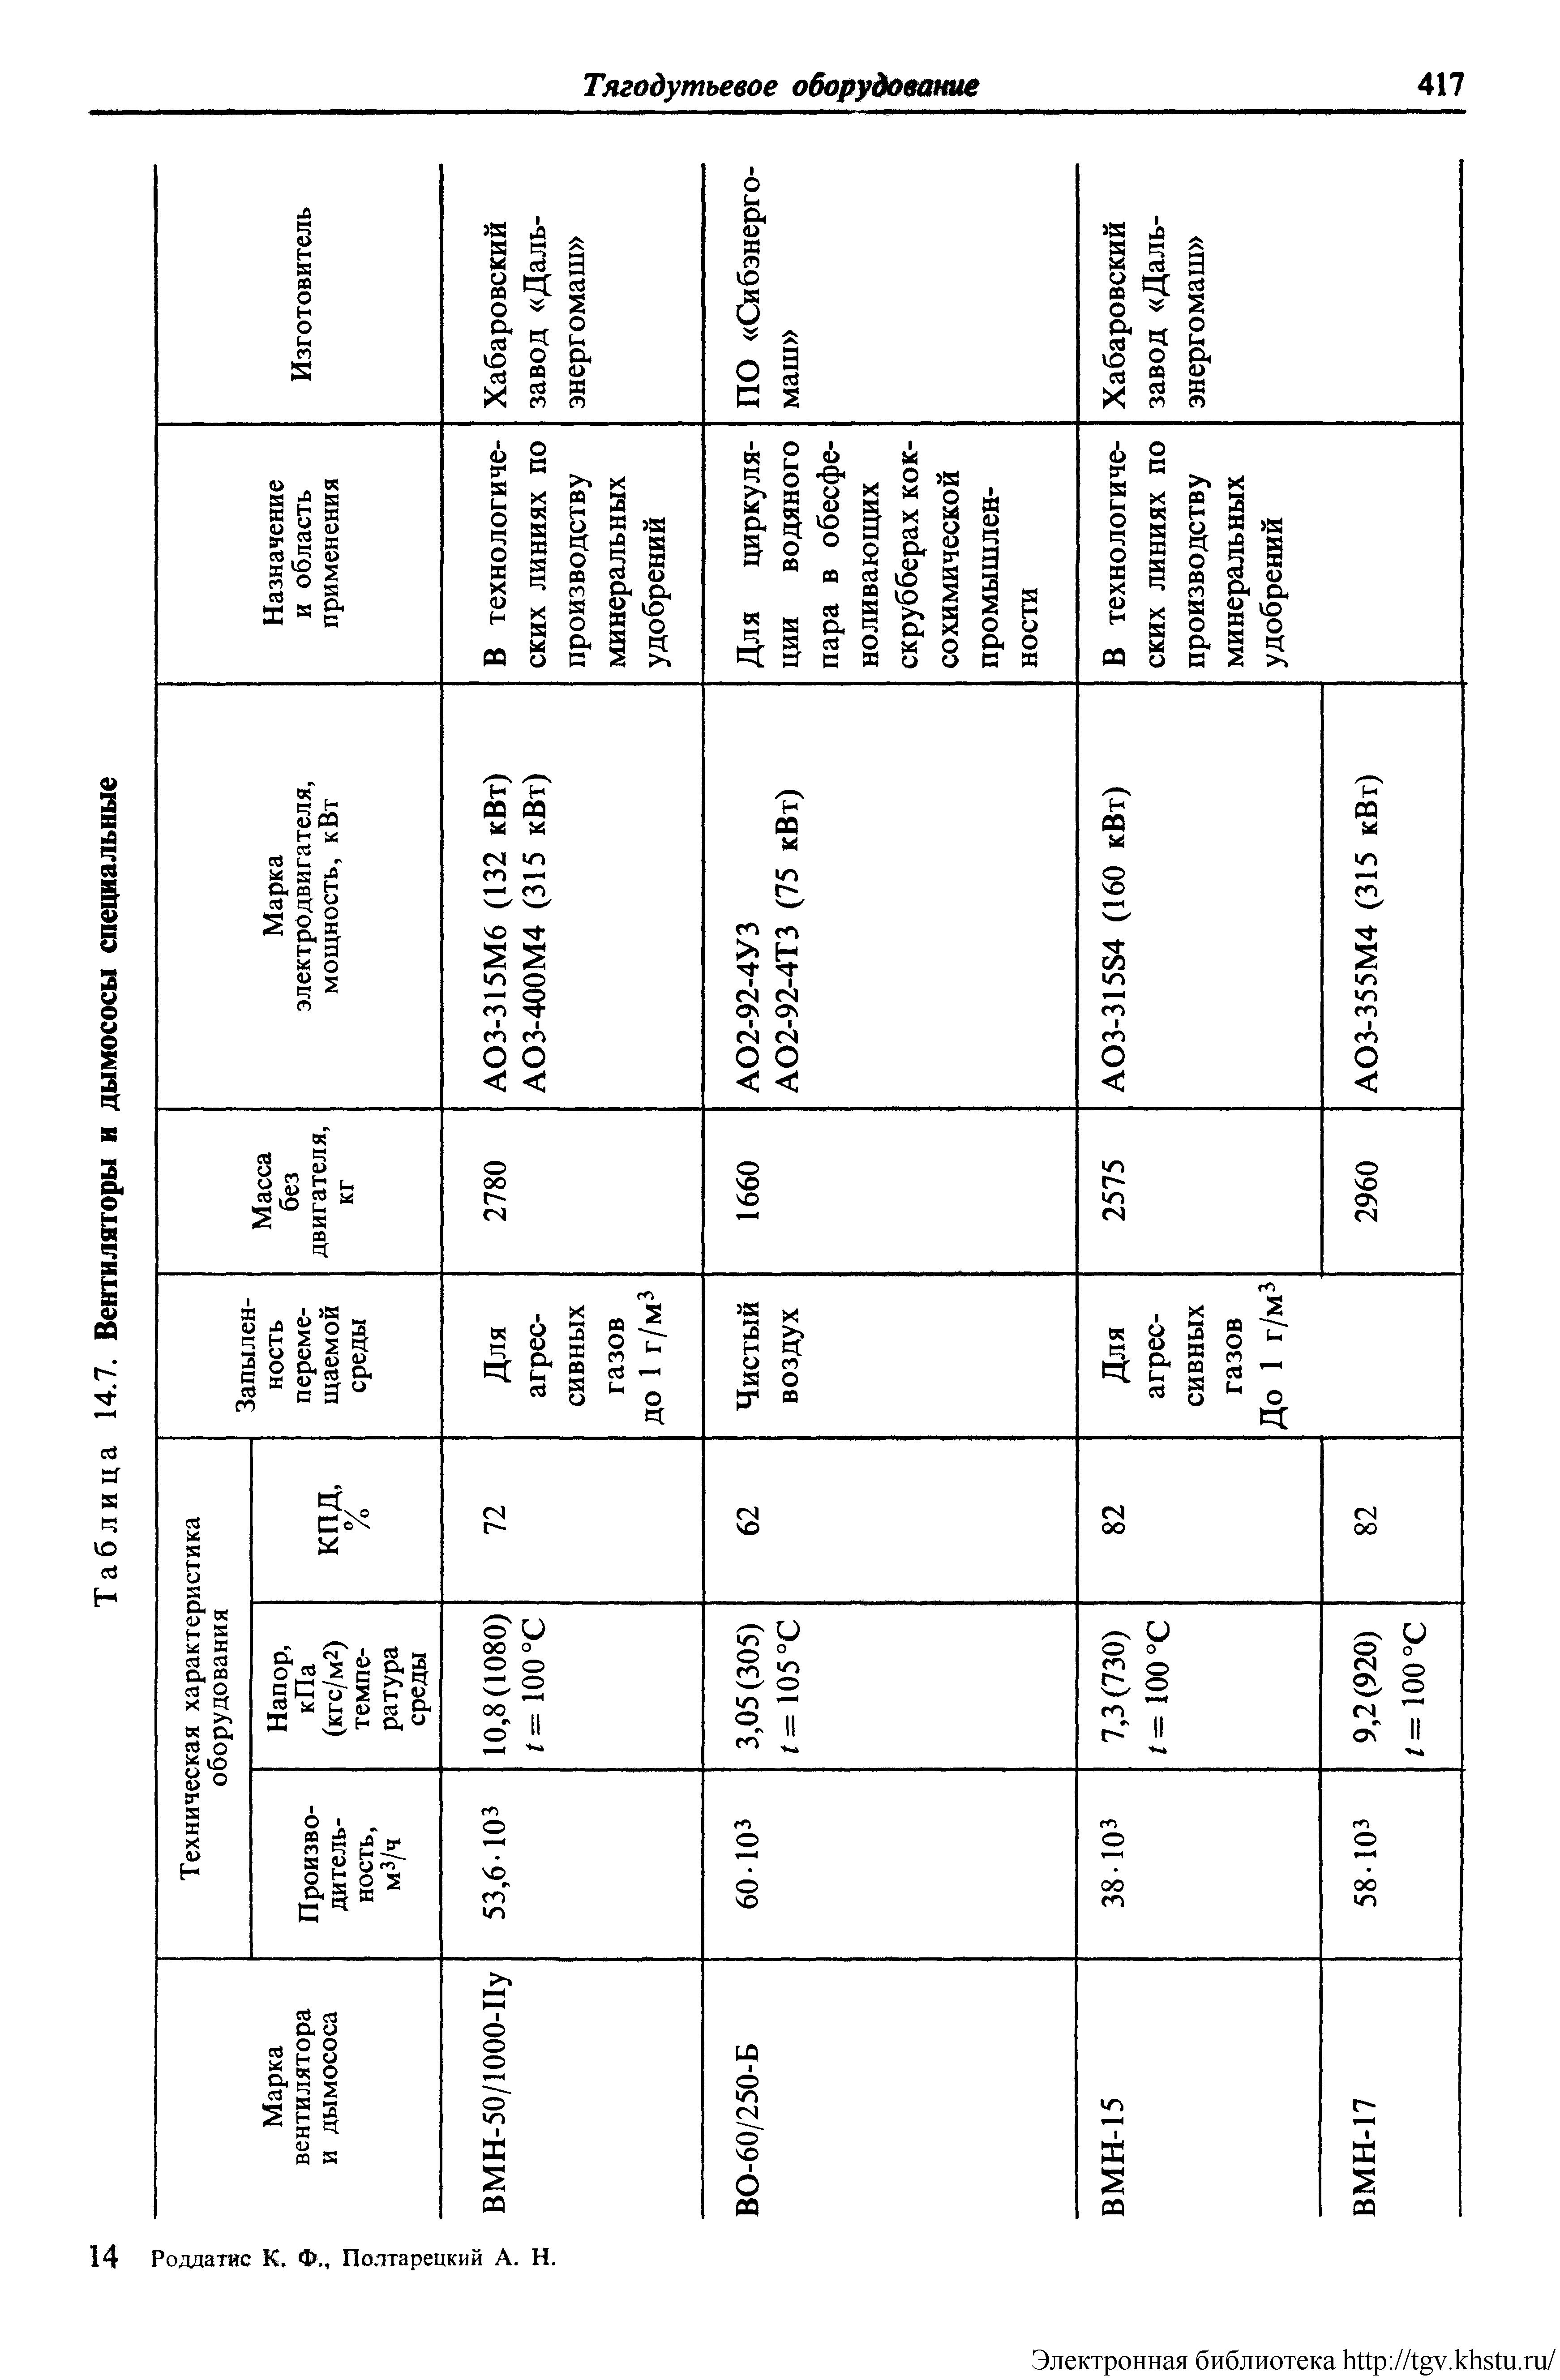 Таблица 14.7. Вентиляторы и дымососы специальные
